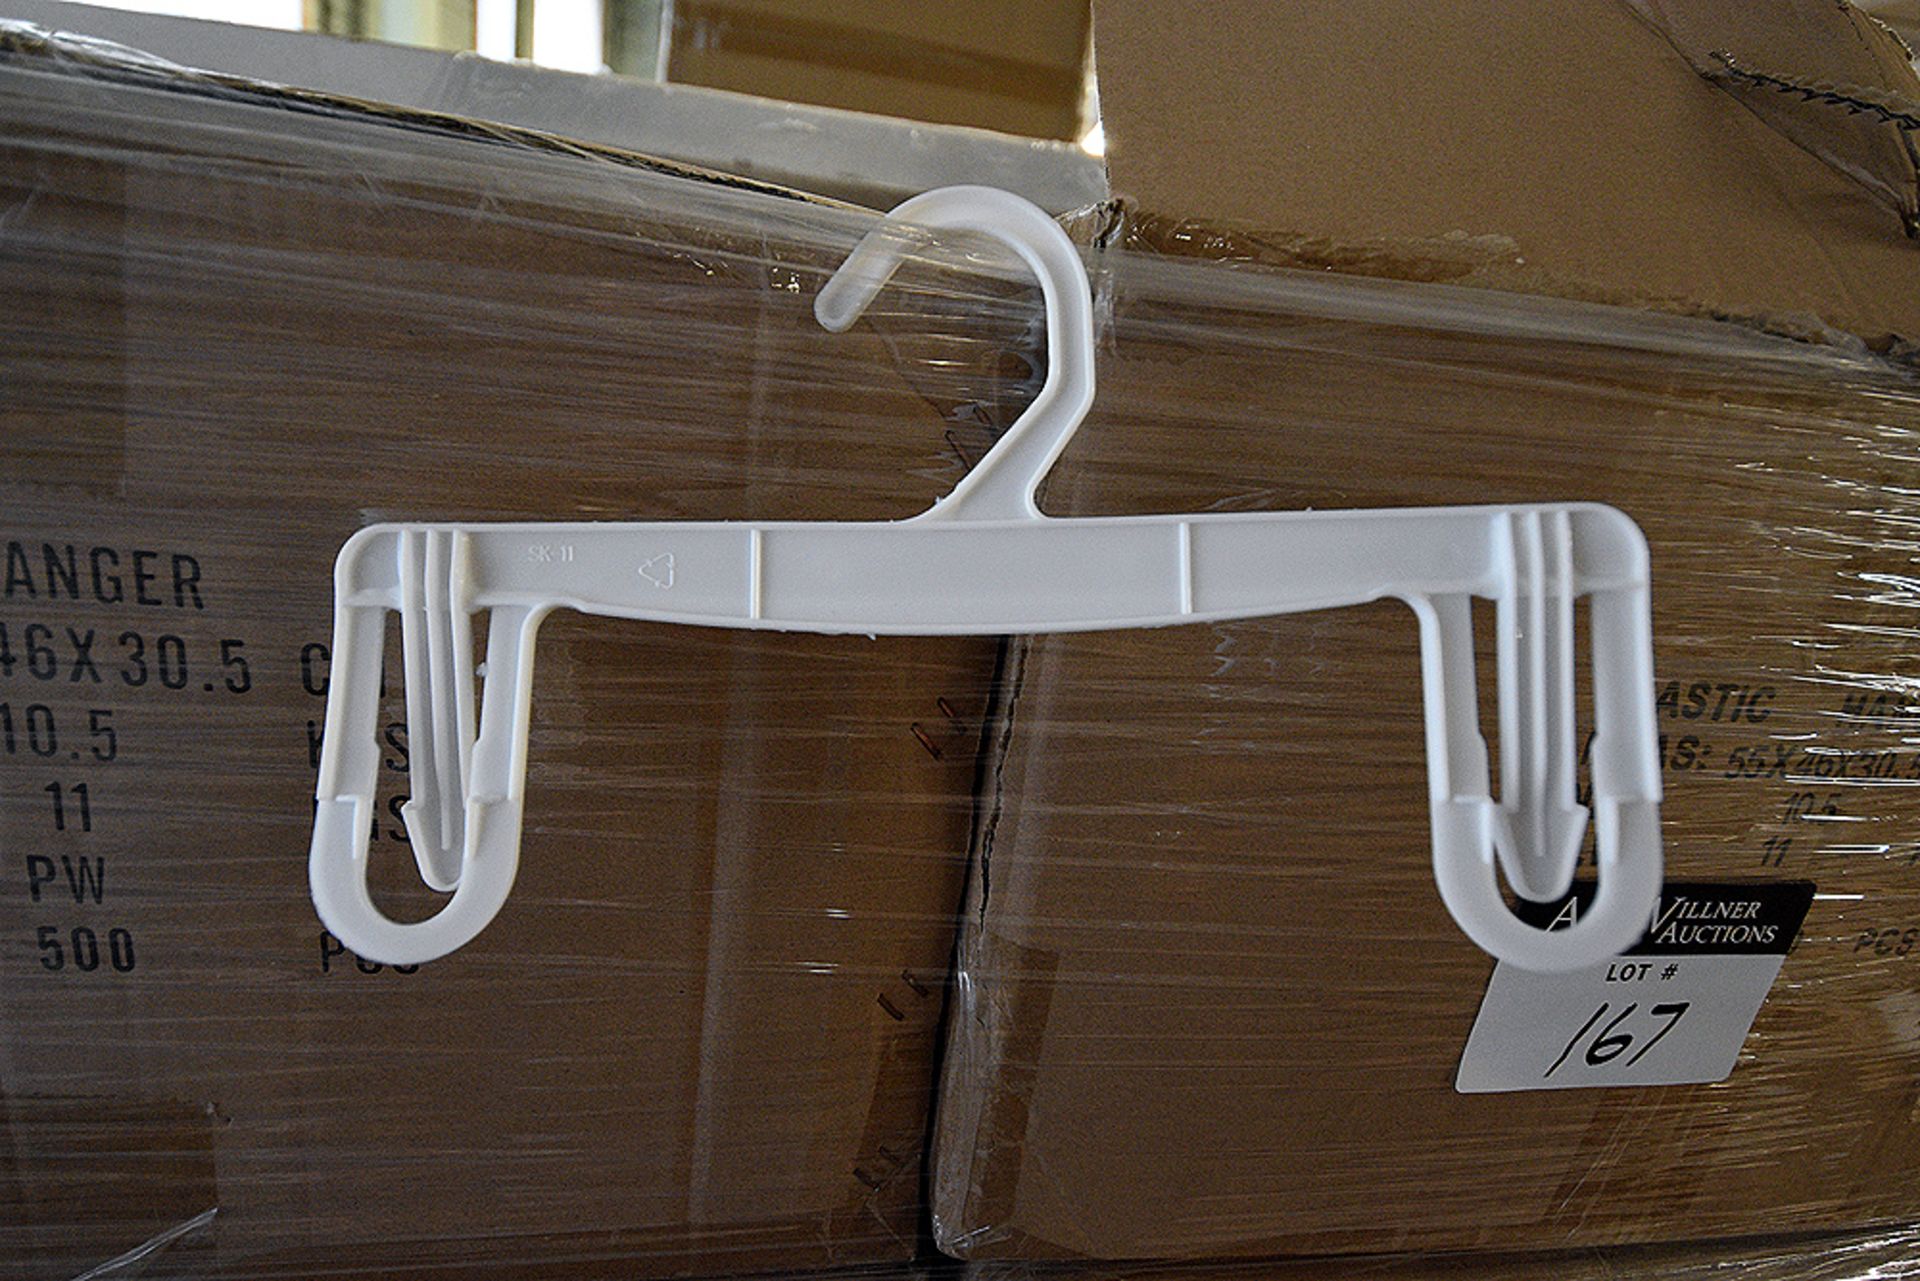 Cases of 500 White Plastic Hangers 55cmx46cmx30 1/2cm